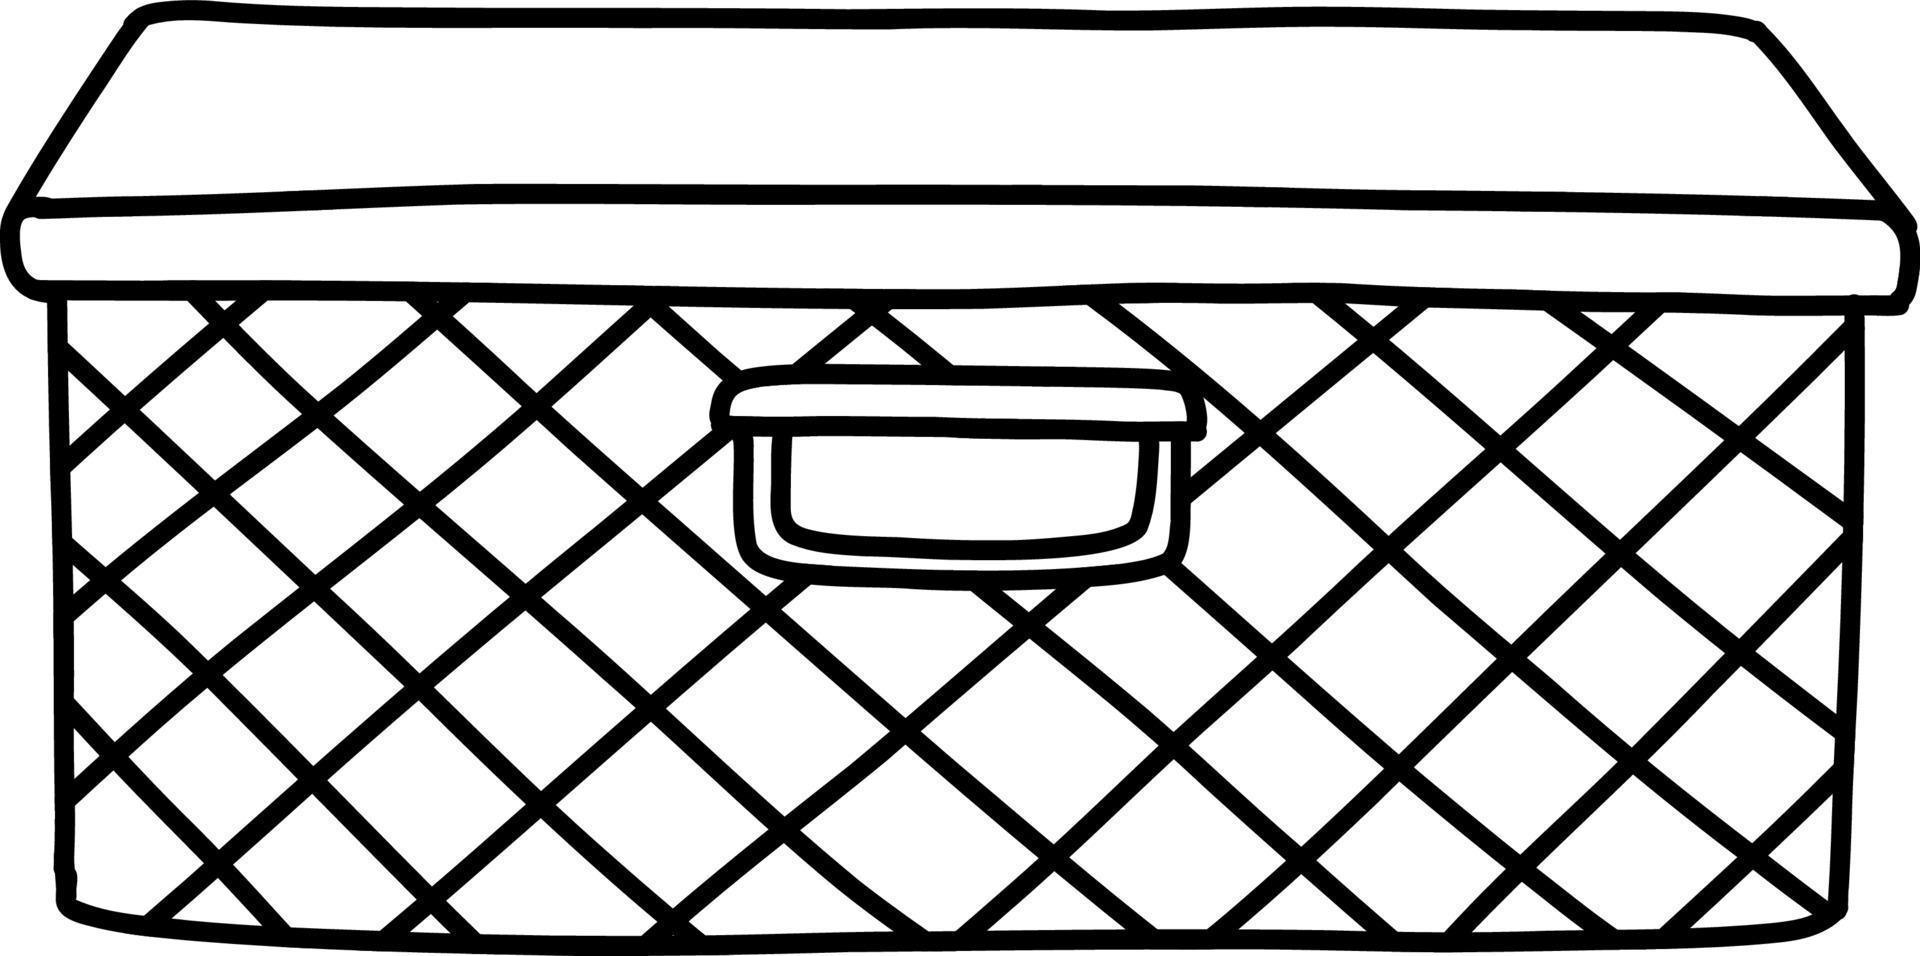 förvaringslåda i flätad. flätad låda skiss. vektor illustration i doodle stil.